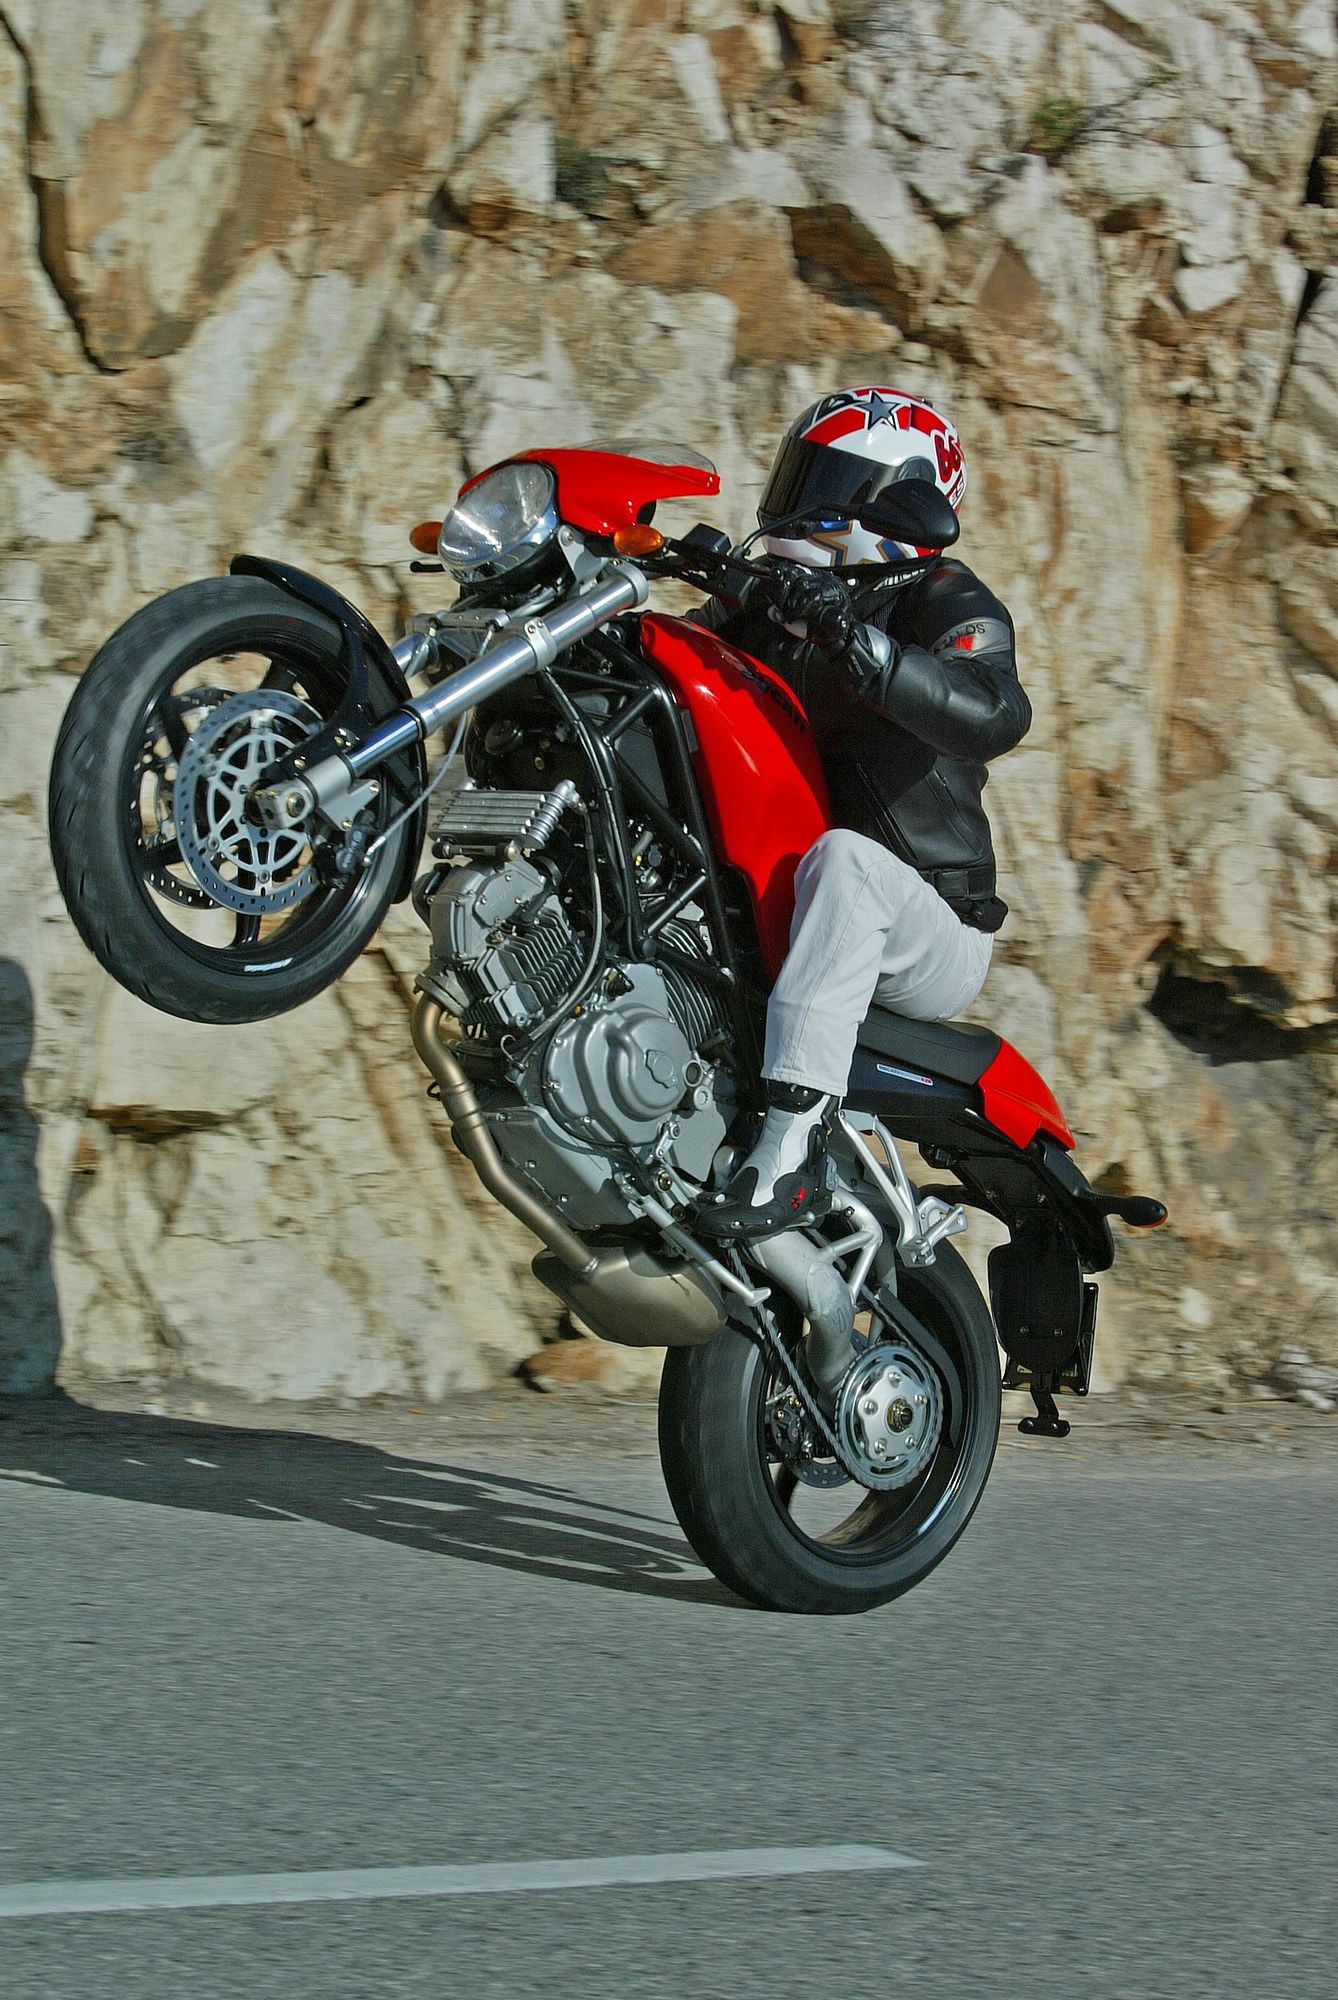 Ducati Monster wheelie